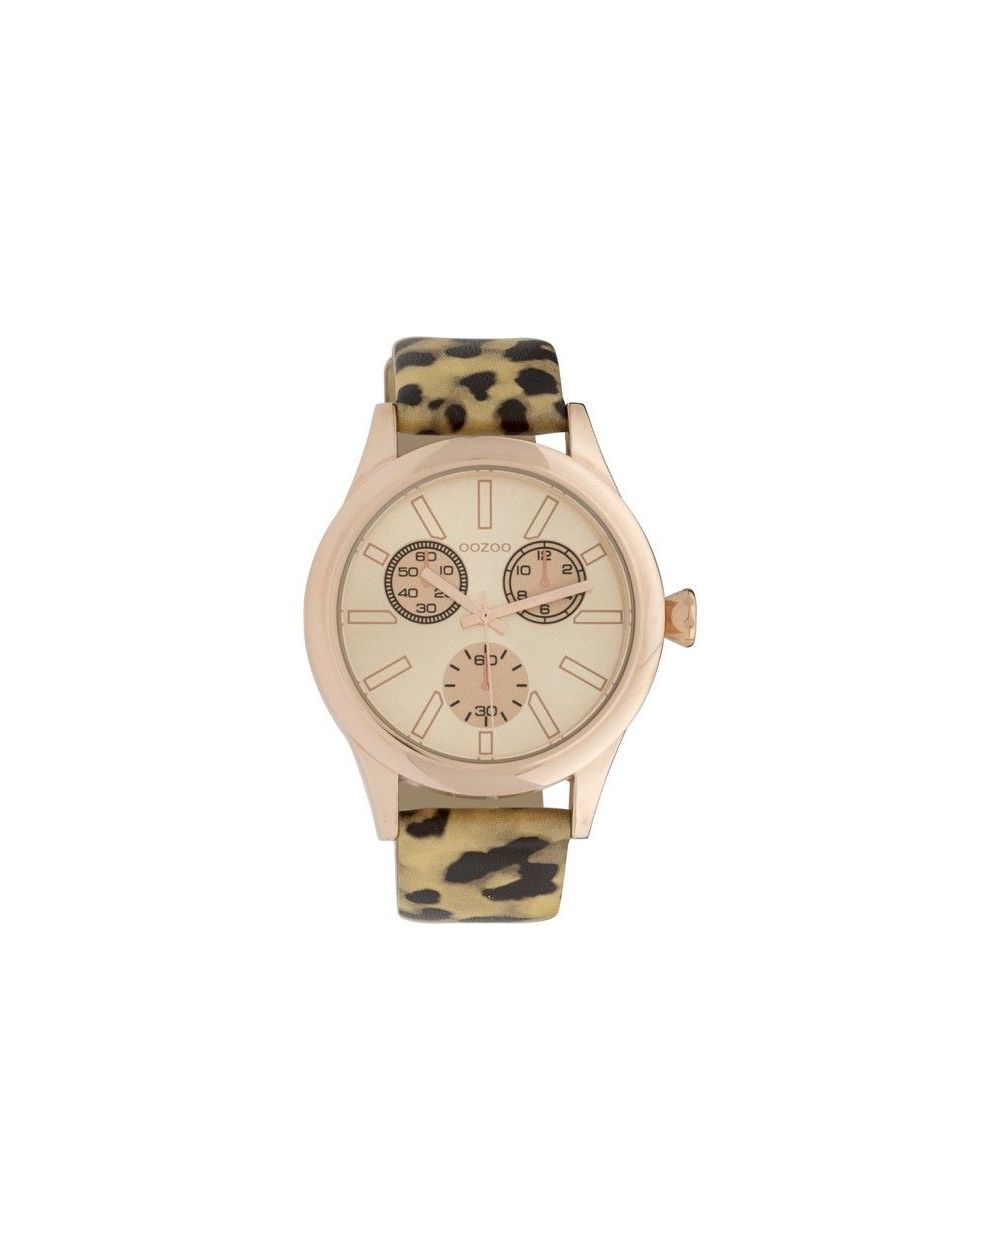 Montre Oozoo Timepieces C9796 gold/black leopard - Marque de montre Oozoo